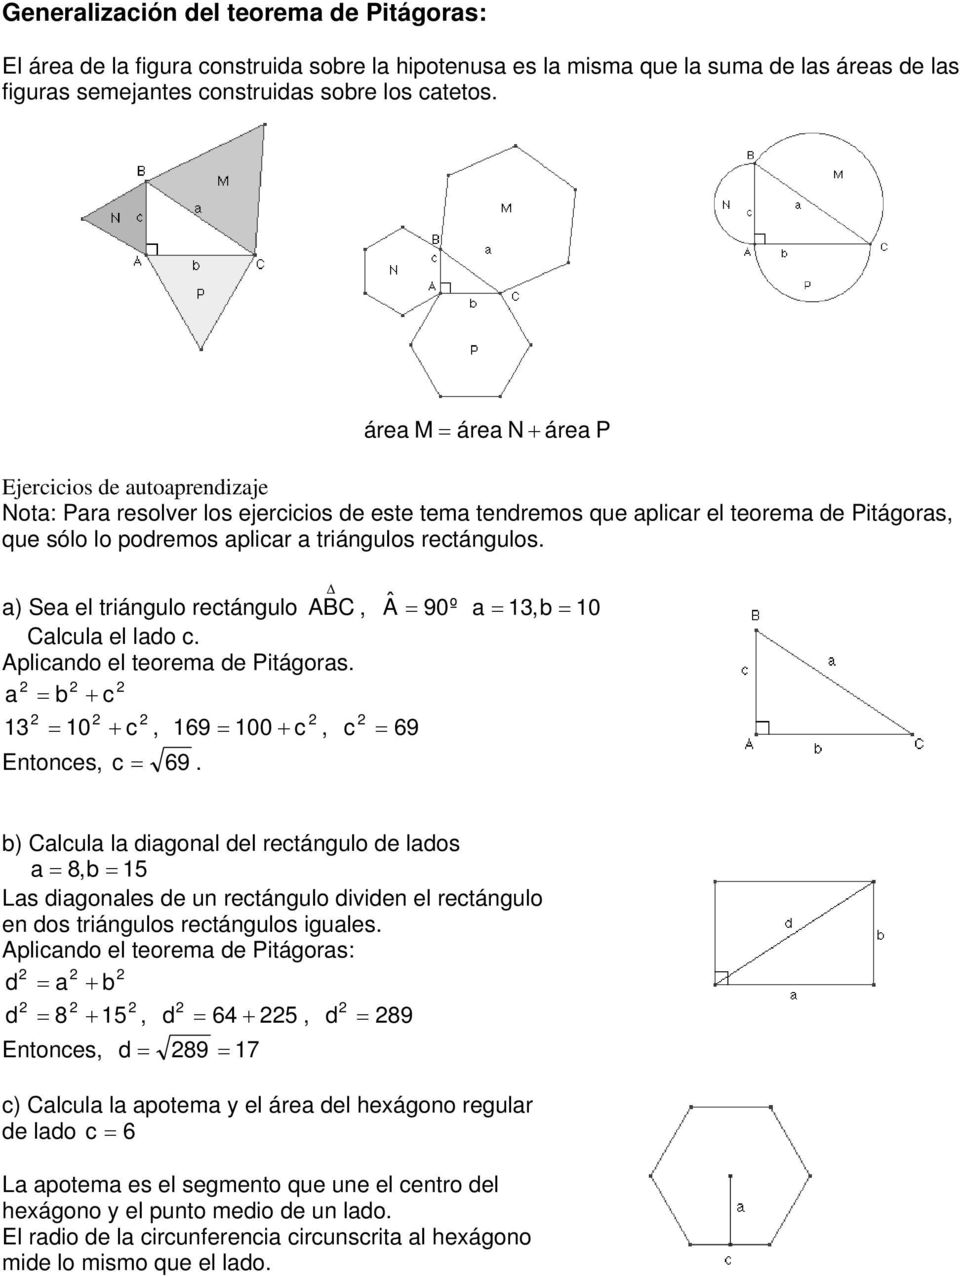 rectángulos. a) Sea el triángulo rectángulo ABC, Â = 90º a = 13,b = 10 Calcula el lado c. Aplicando el teorema de Pitágoras. a = b + c 13 = 10 + c, 169 = 100 + c, c = 69 Entonces, c = 69.